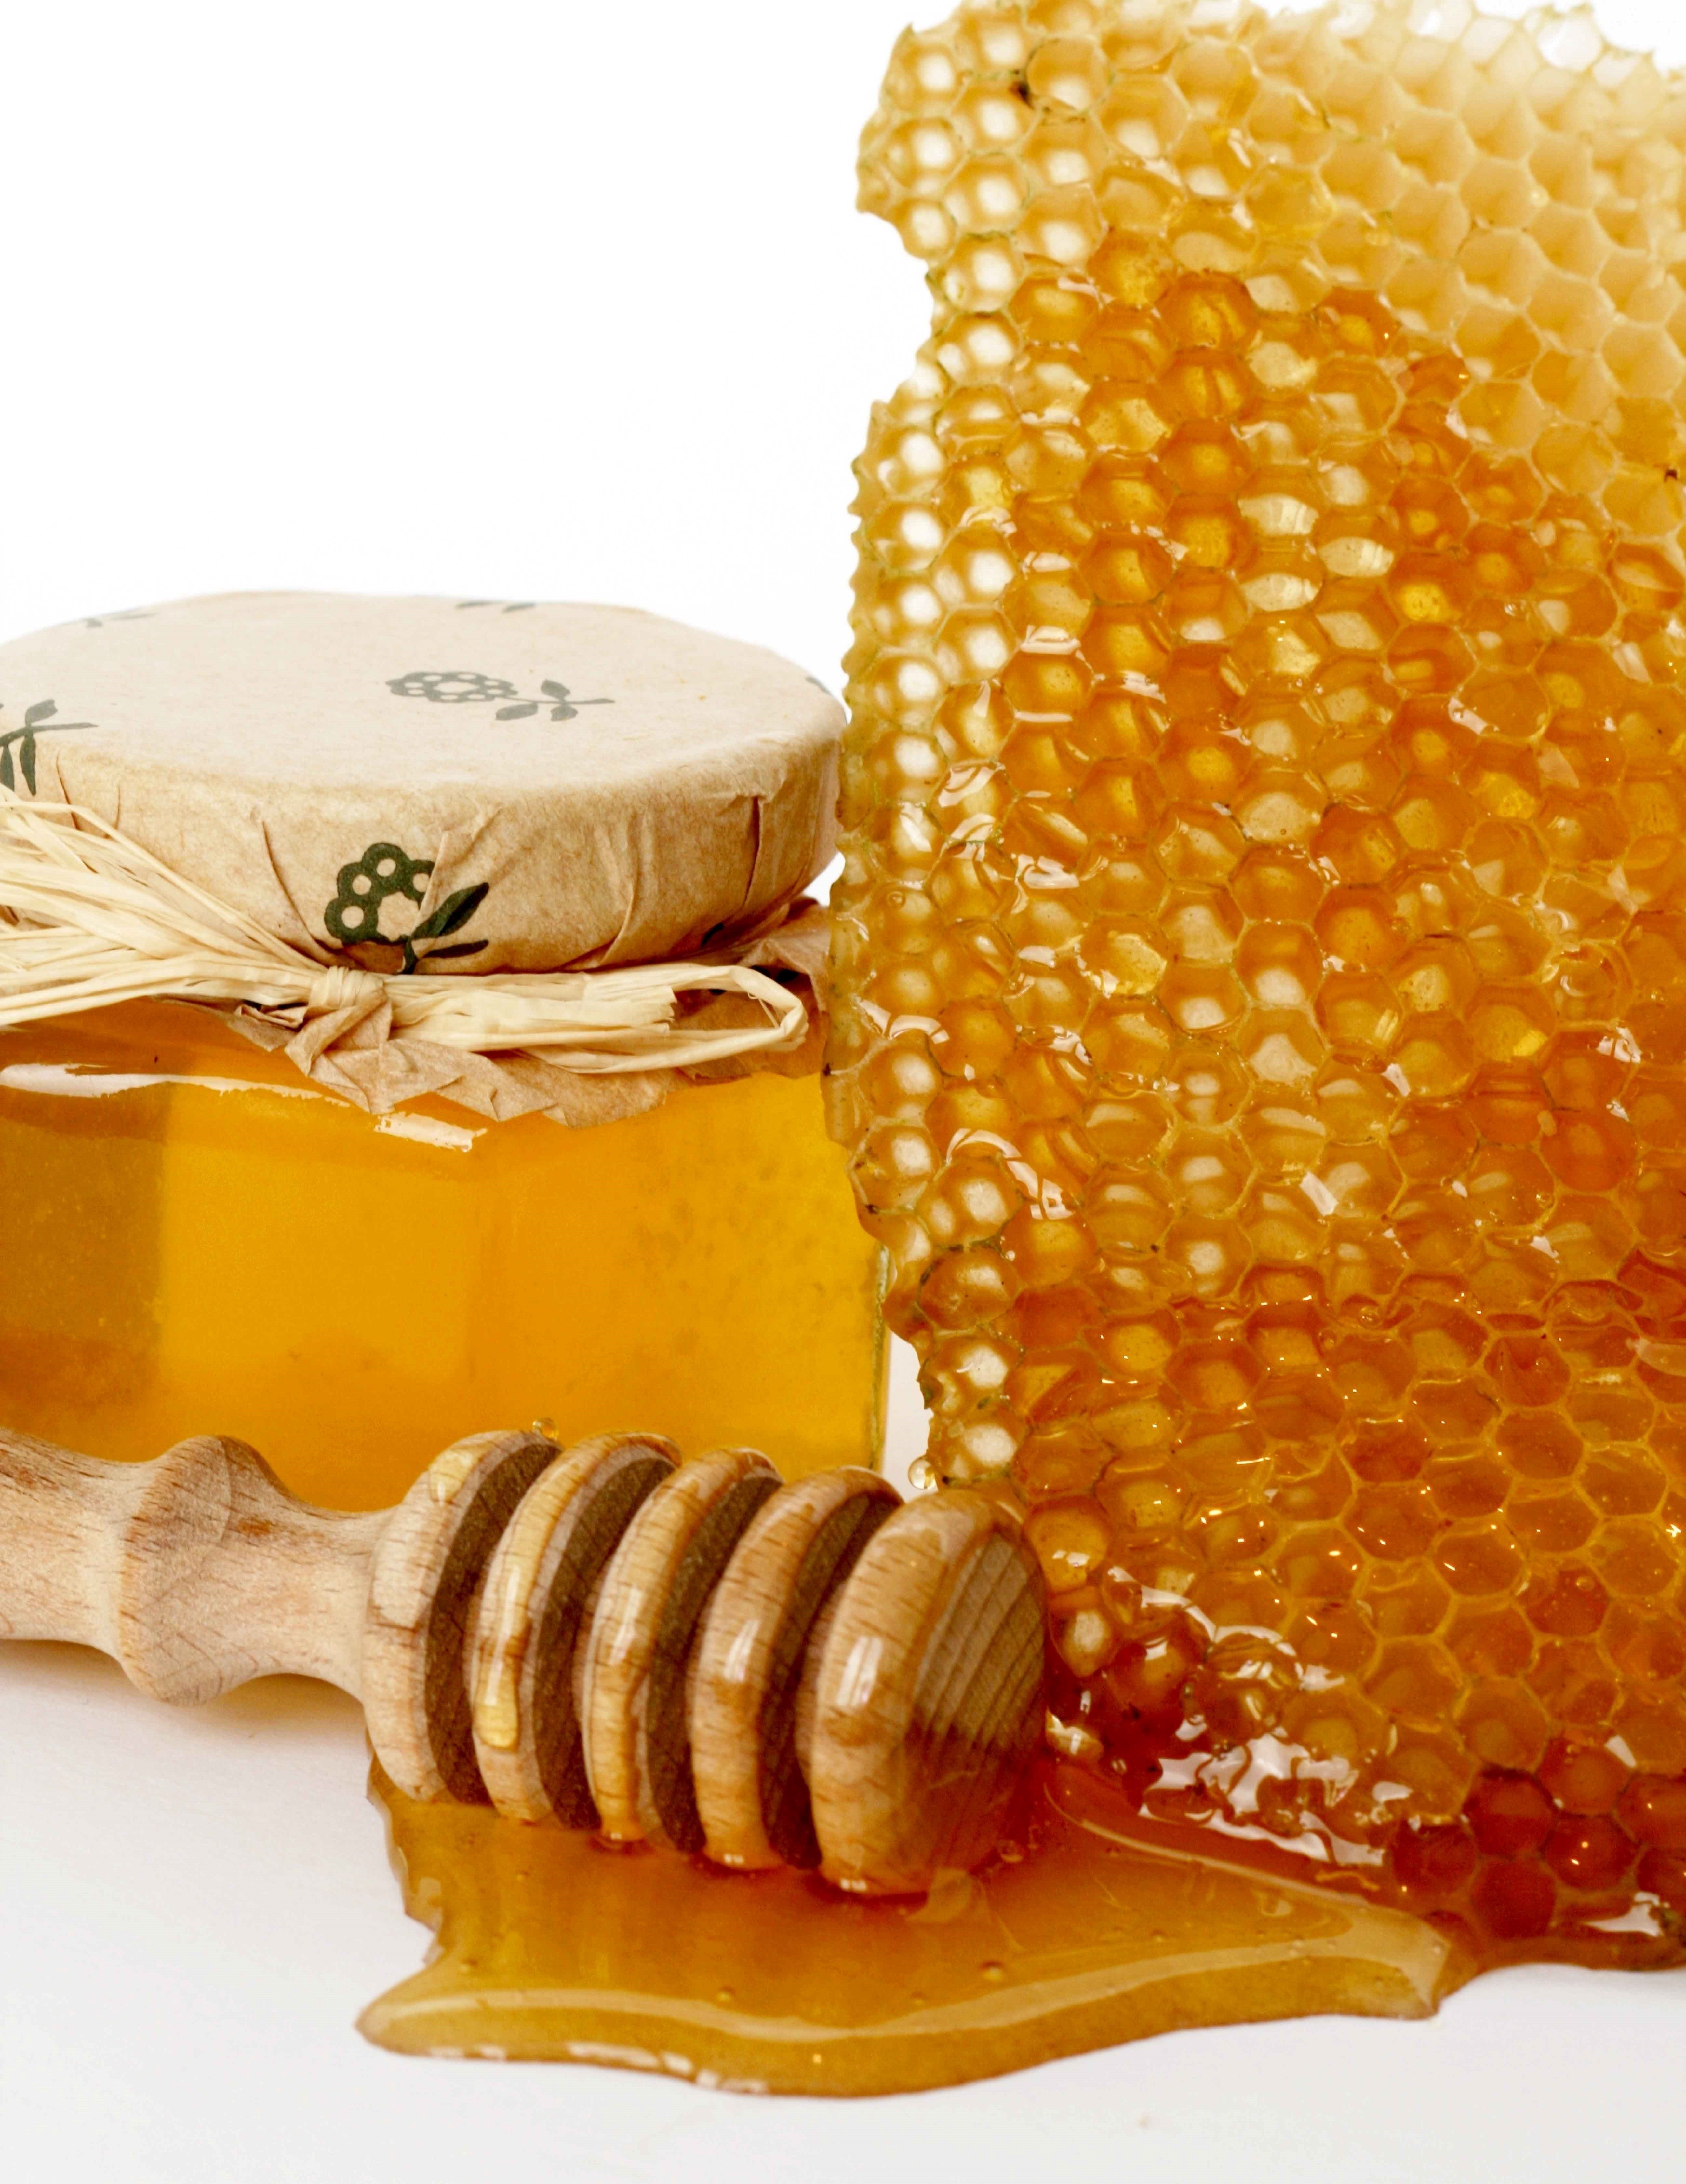 Сова пвл мед. Соты меда. Пчелиный мёд. Мёд и продукты пчеловодства. Красивый мед.